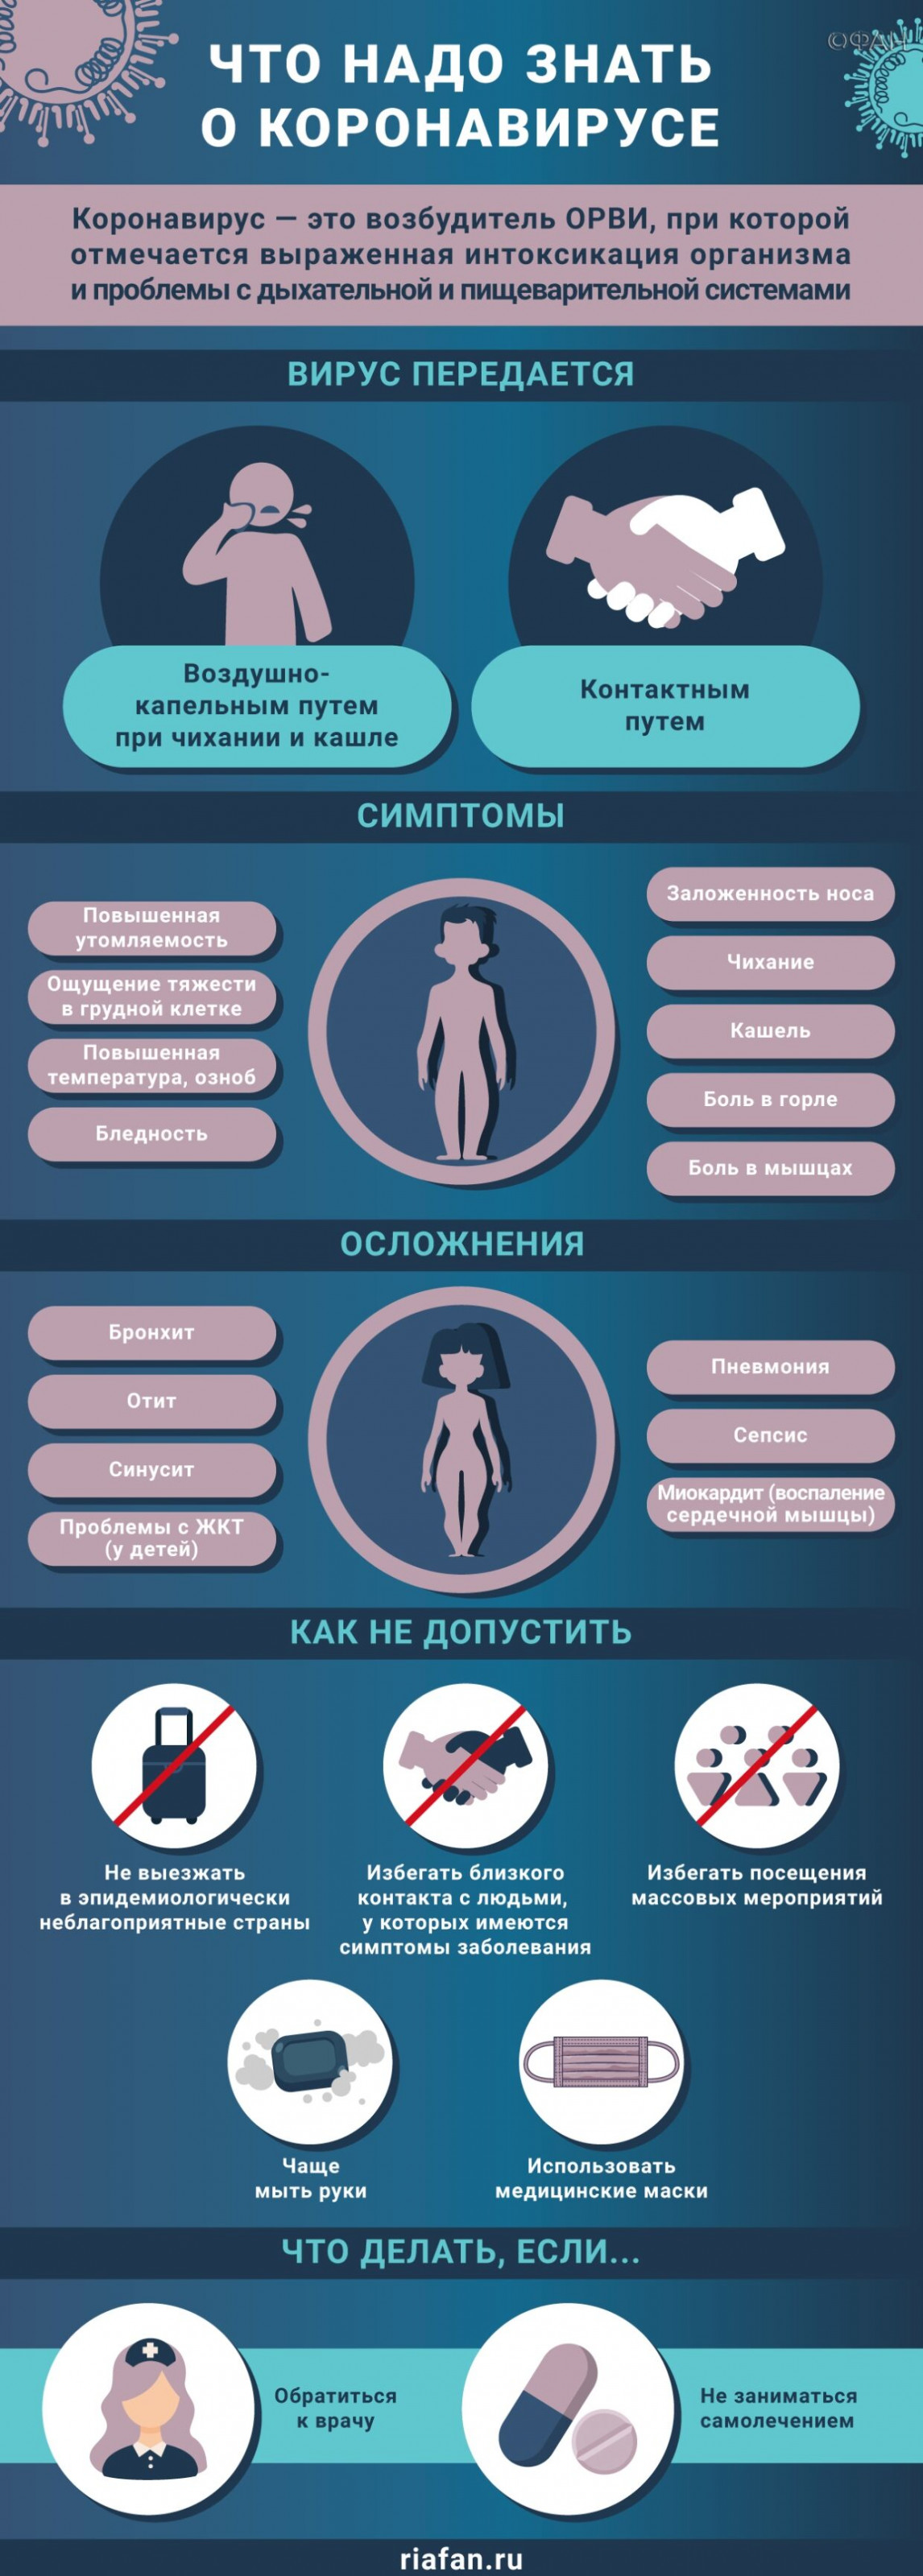 Добровольцы присылают анкеты на участие в тестировании вакцины от COVID-19 в Петербурге